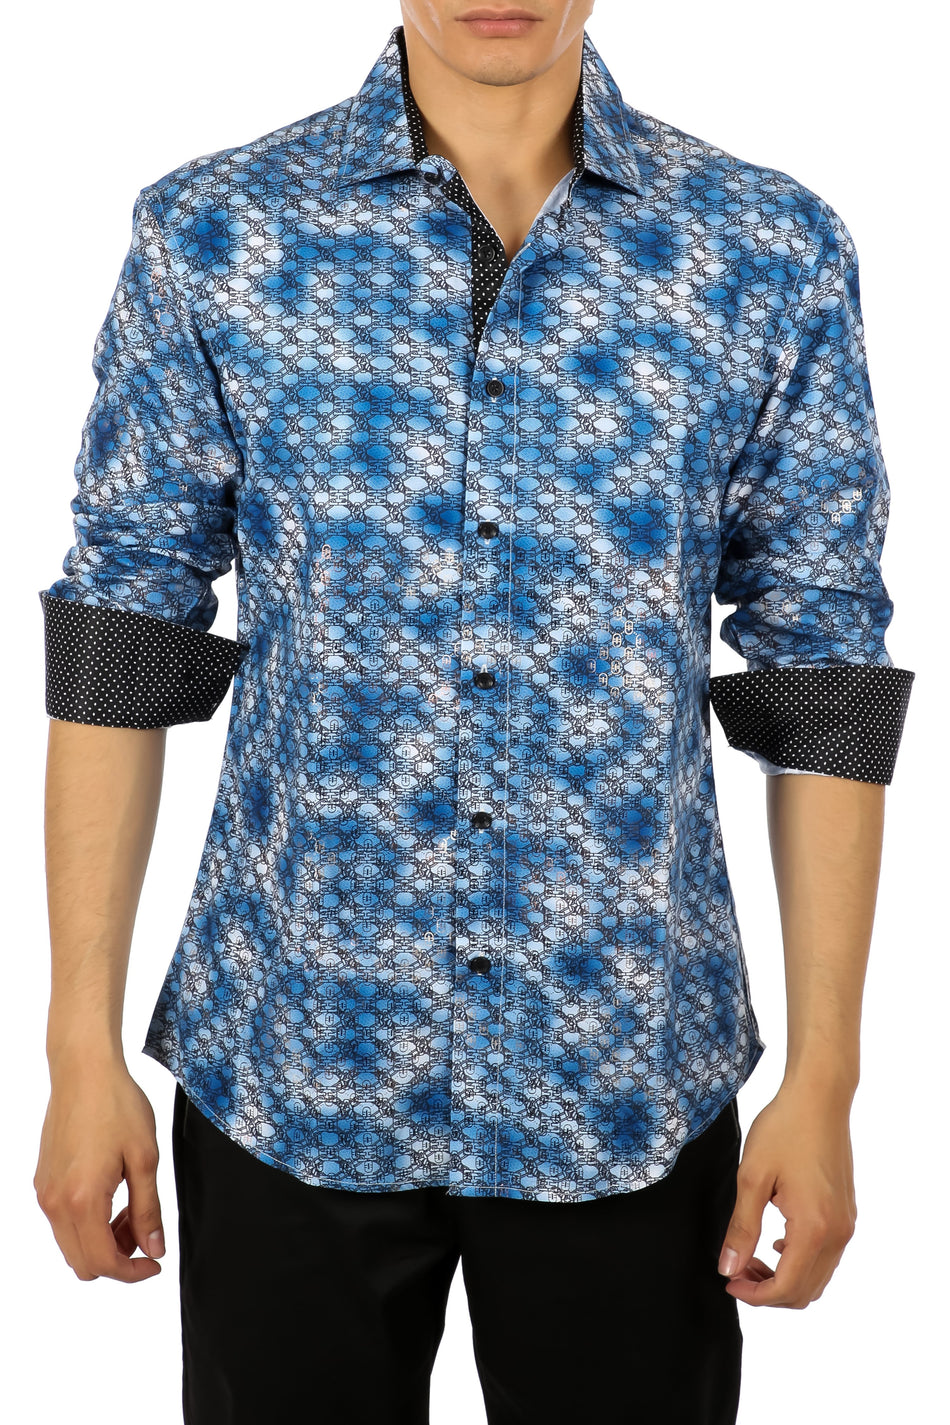 Men's Blue Chainlink Button Up Long Sleeve Dress Shirt